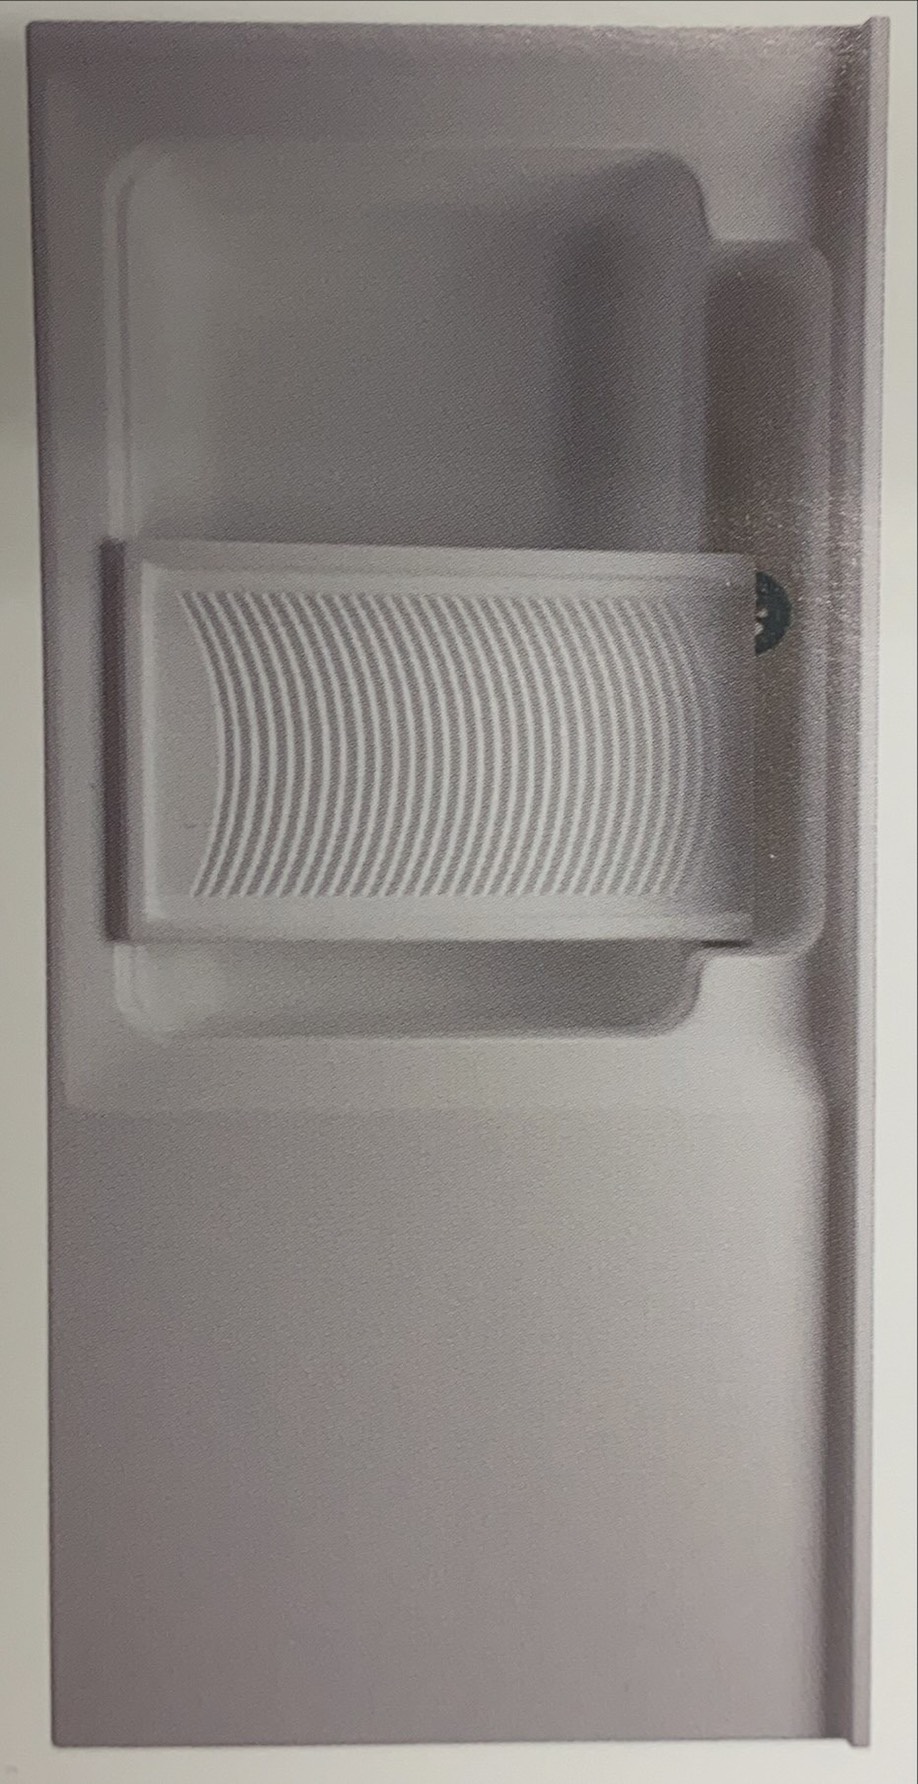 單槽-1200型洗衣槽(左水槽)